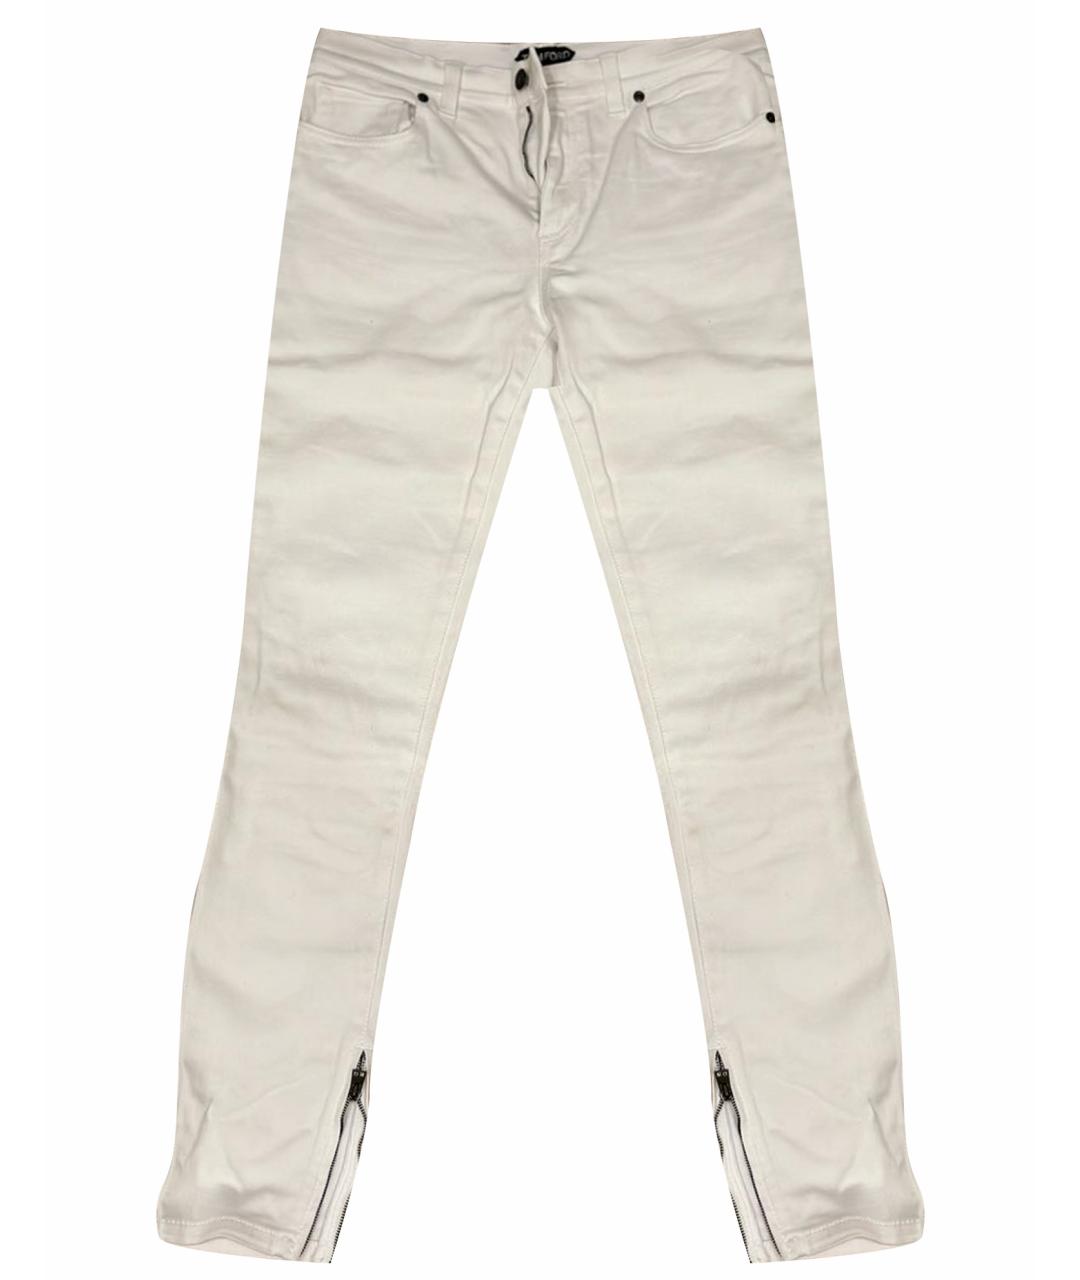 TOM FORD Белые хлопковые джинсы слим, фото 1